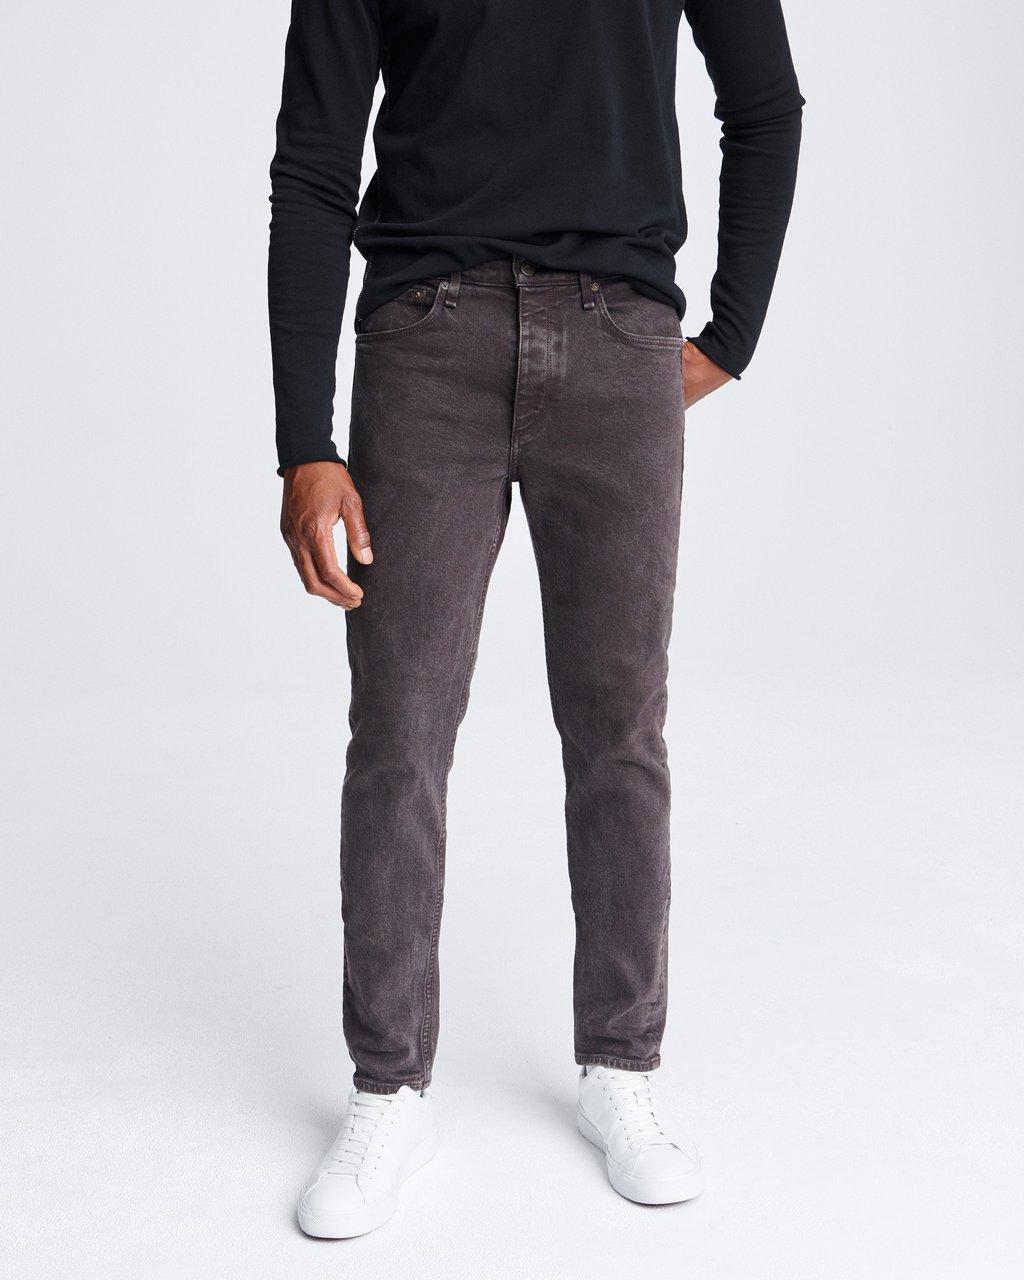 Fit 2 Men's Jeans in Dark Brick | rag & bone